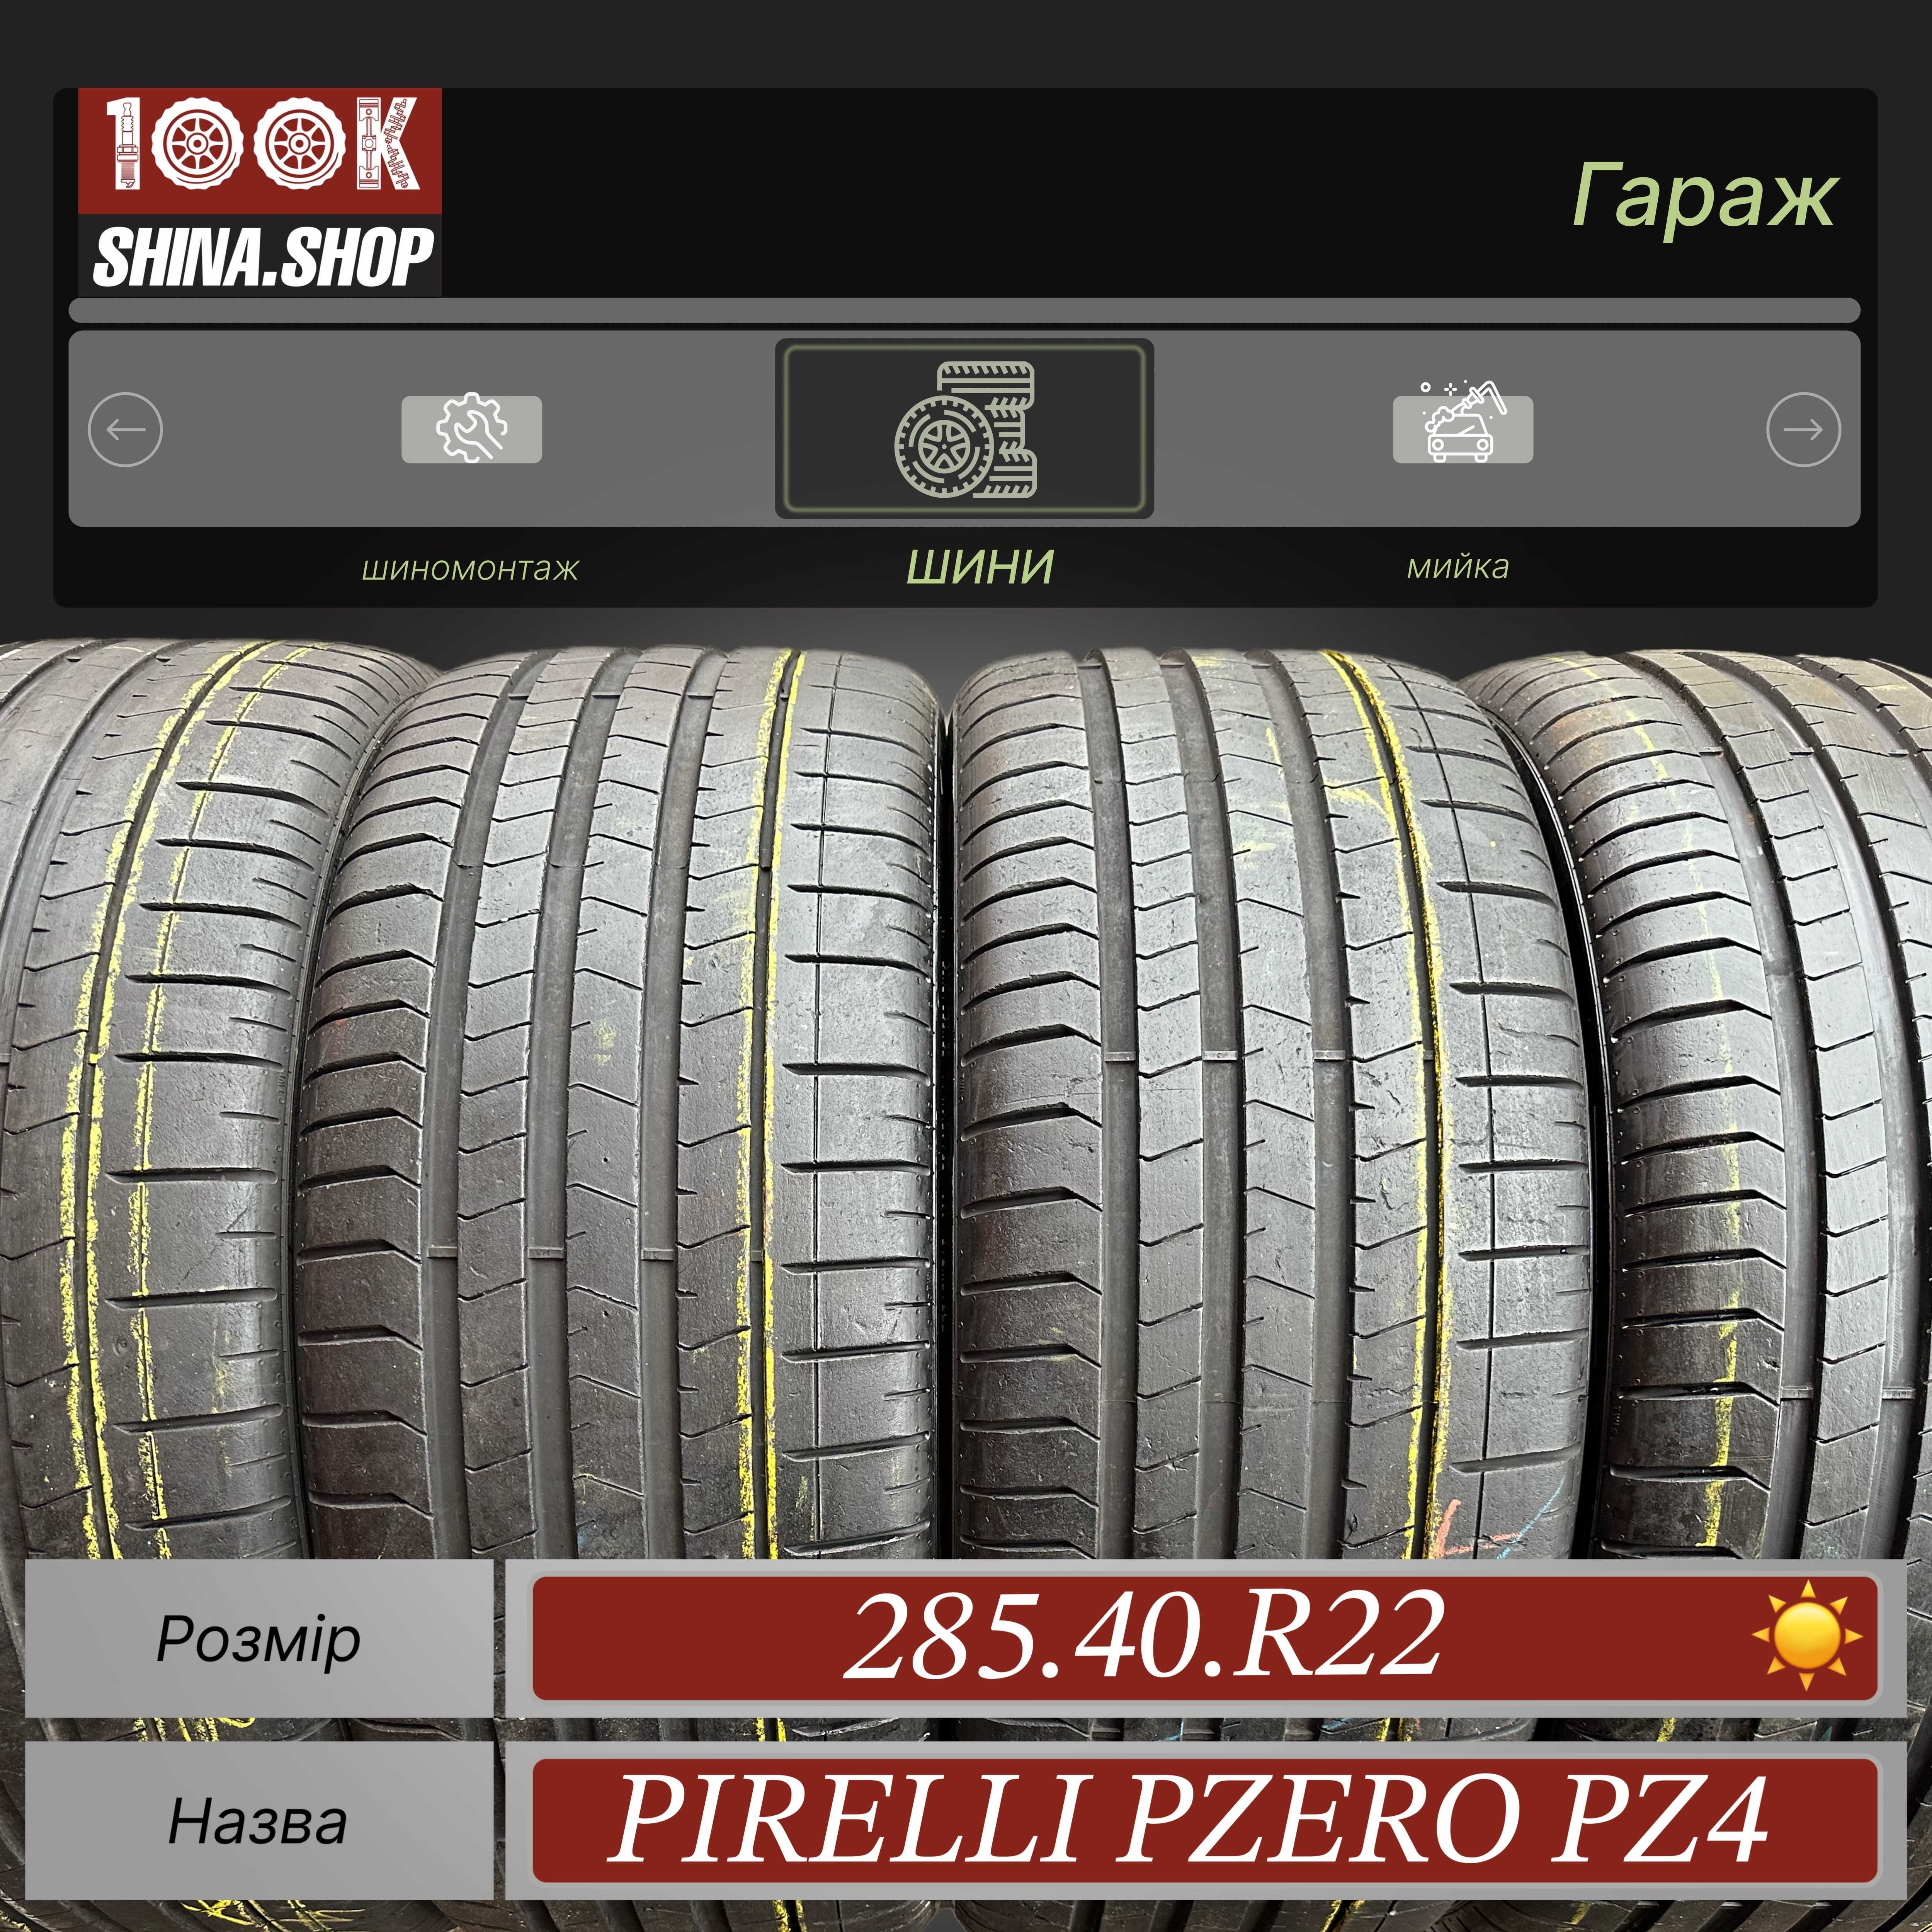 Шины БУ 285 40 R 22 Pirelli Pzero Pz4 Резина лето комплект